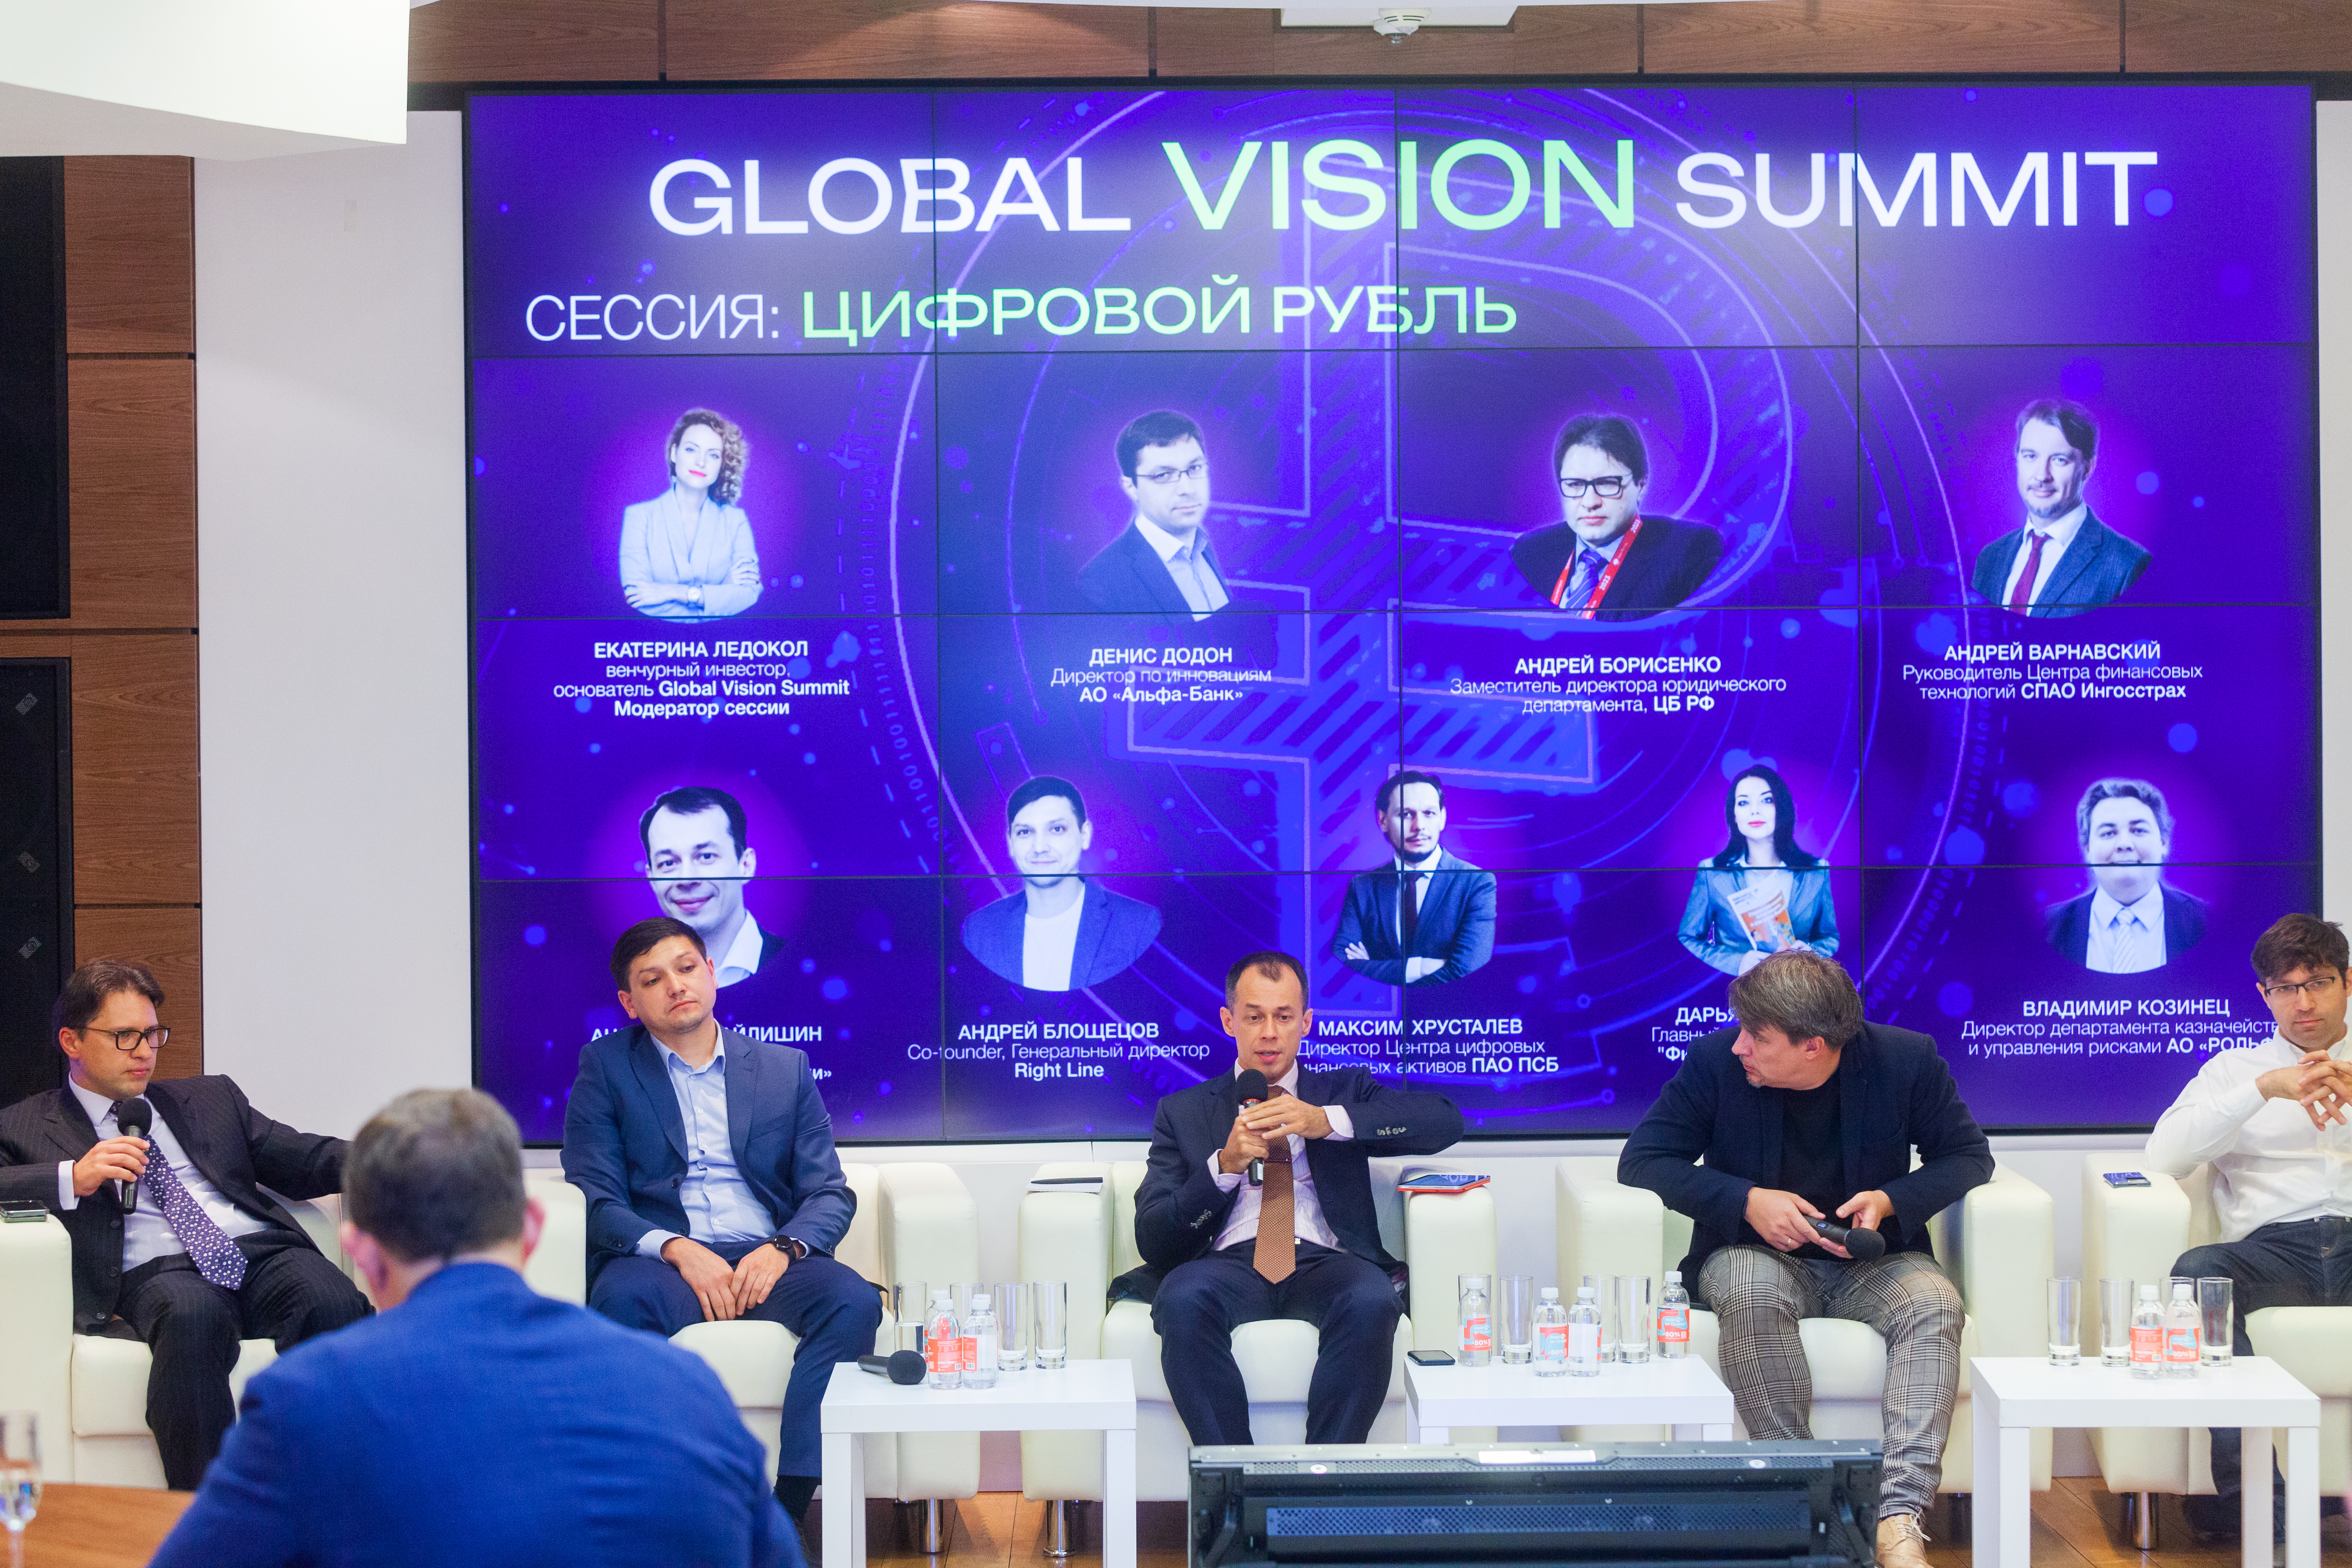 Цифровой рубль: риски и новые возможности на Global Vision Summit